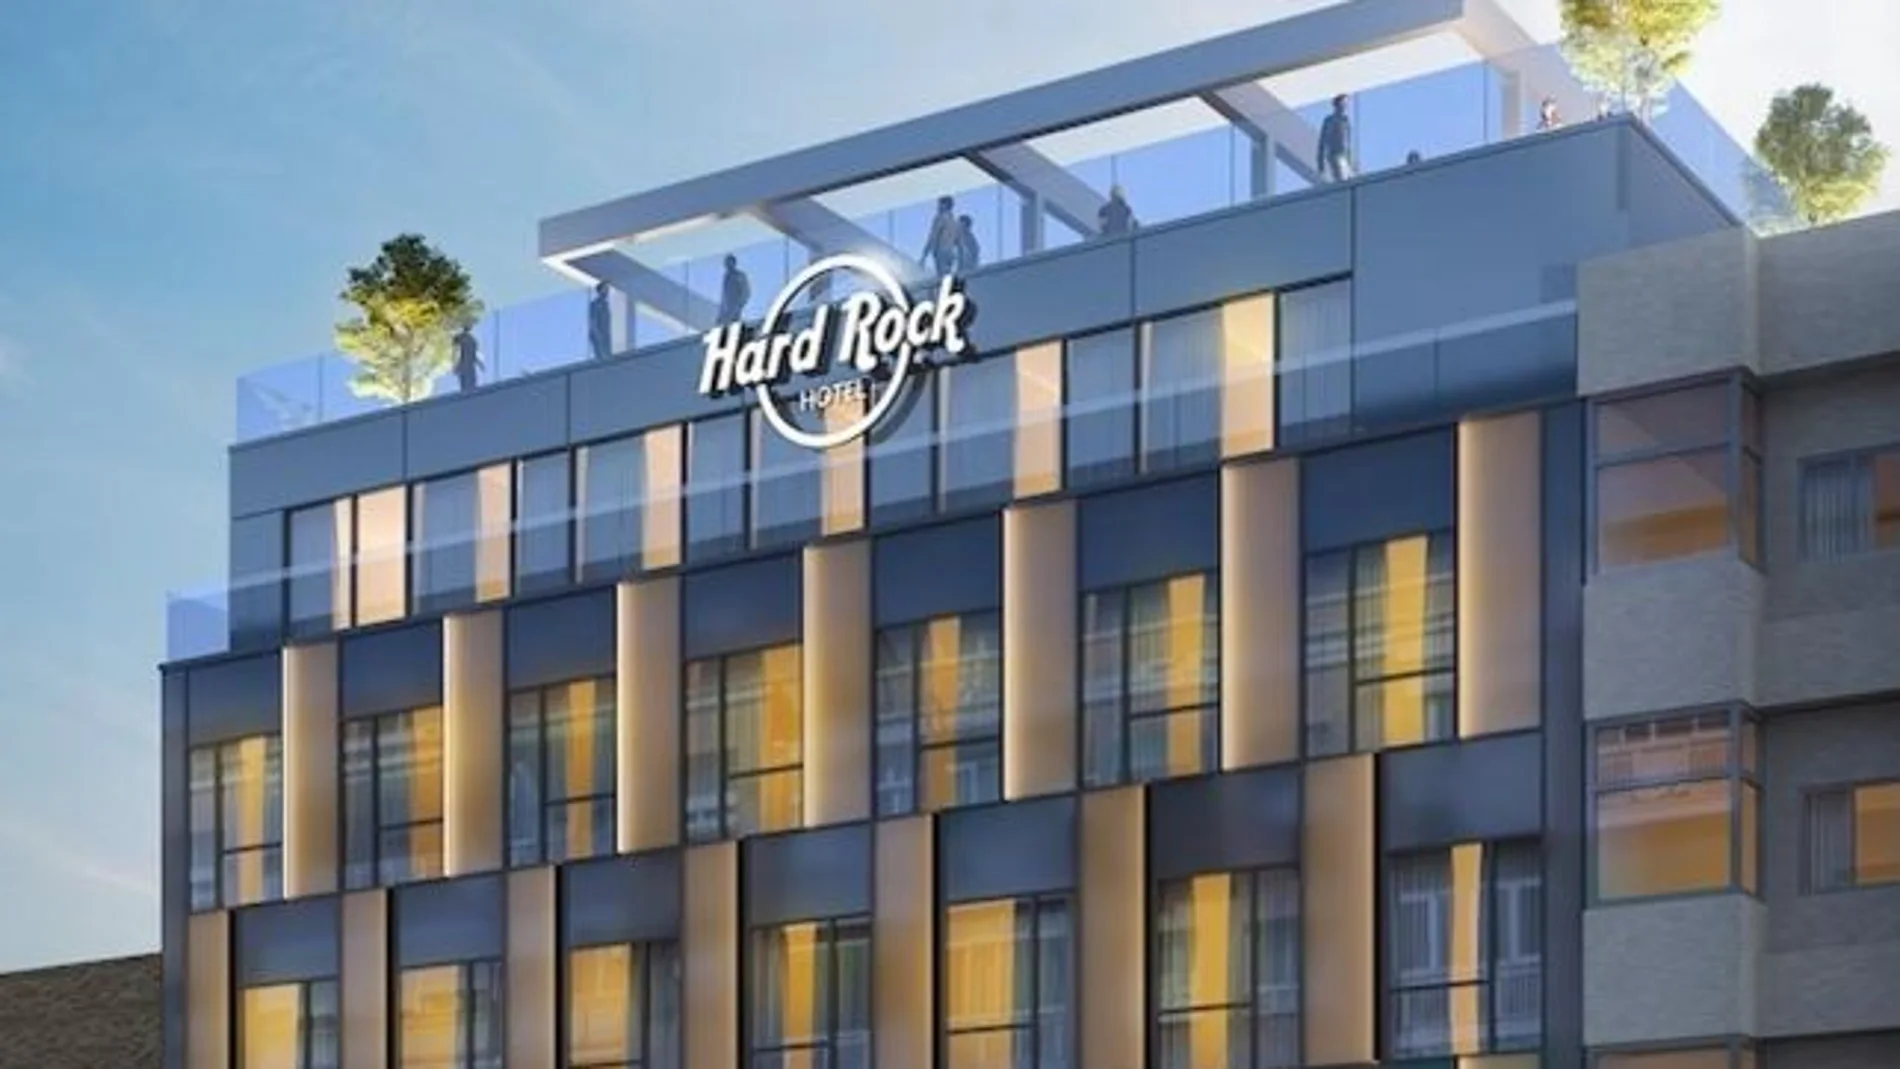 Hard Rock abrirá en Madrid en 2019 su primer hotel en la Península